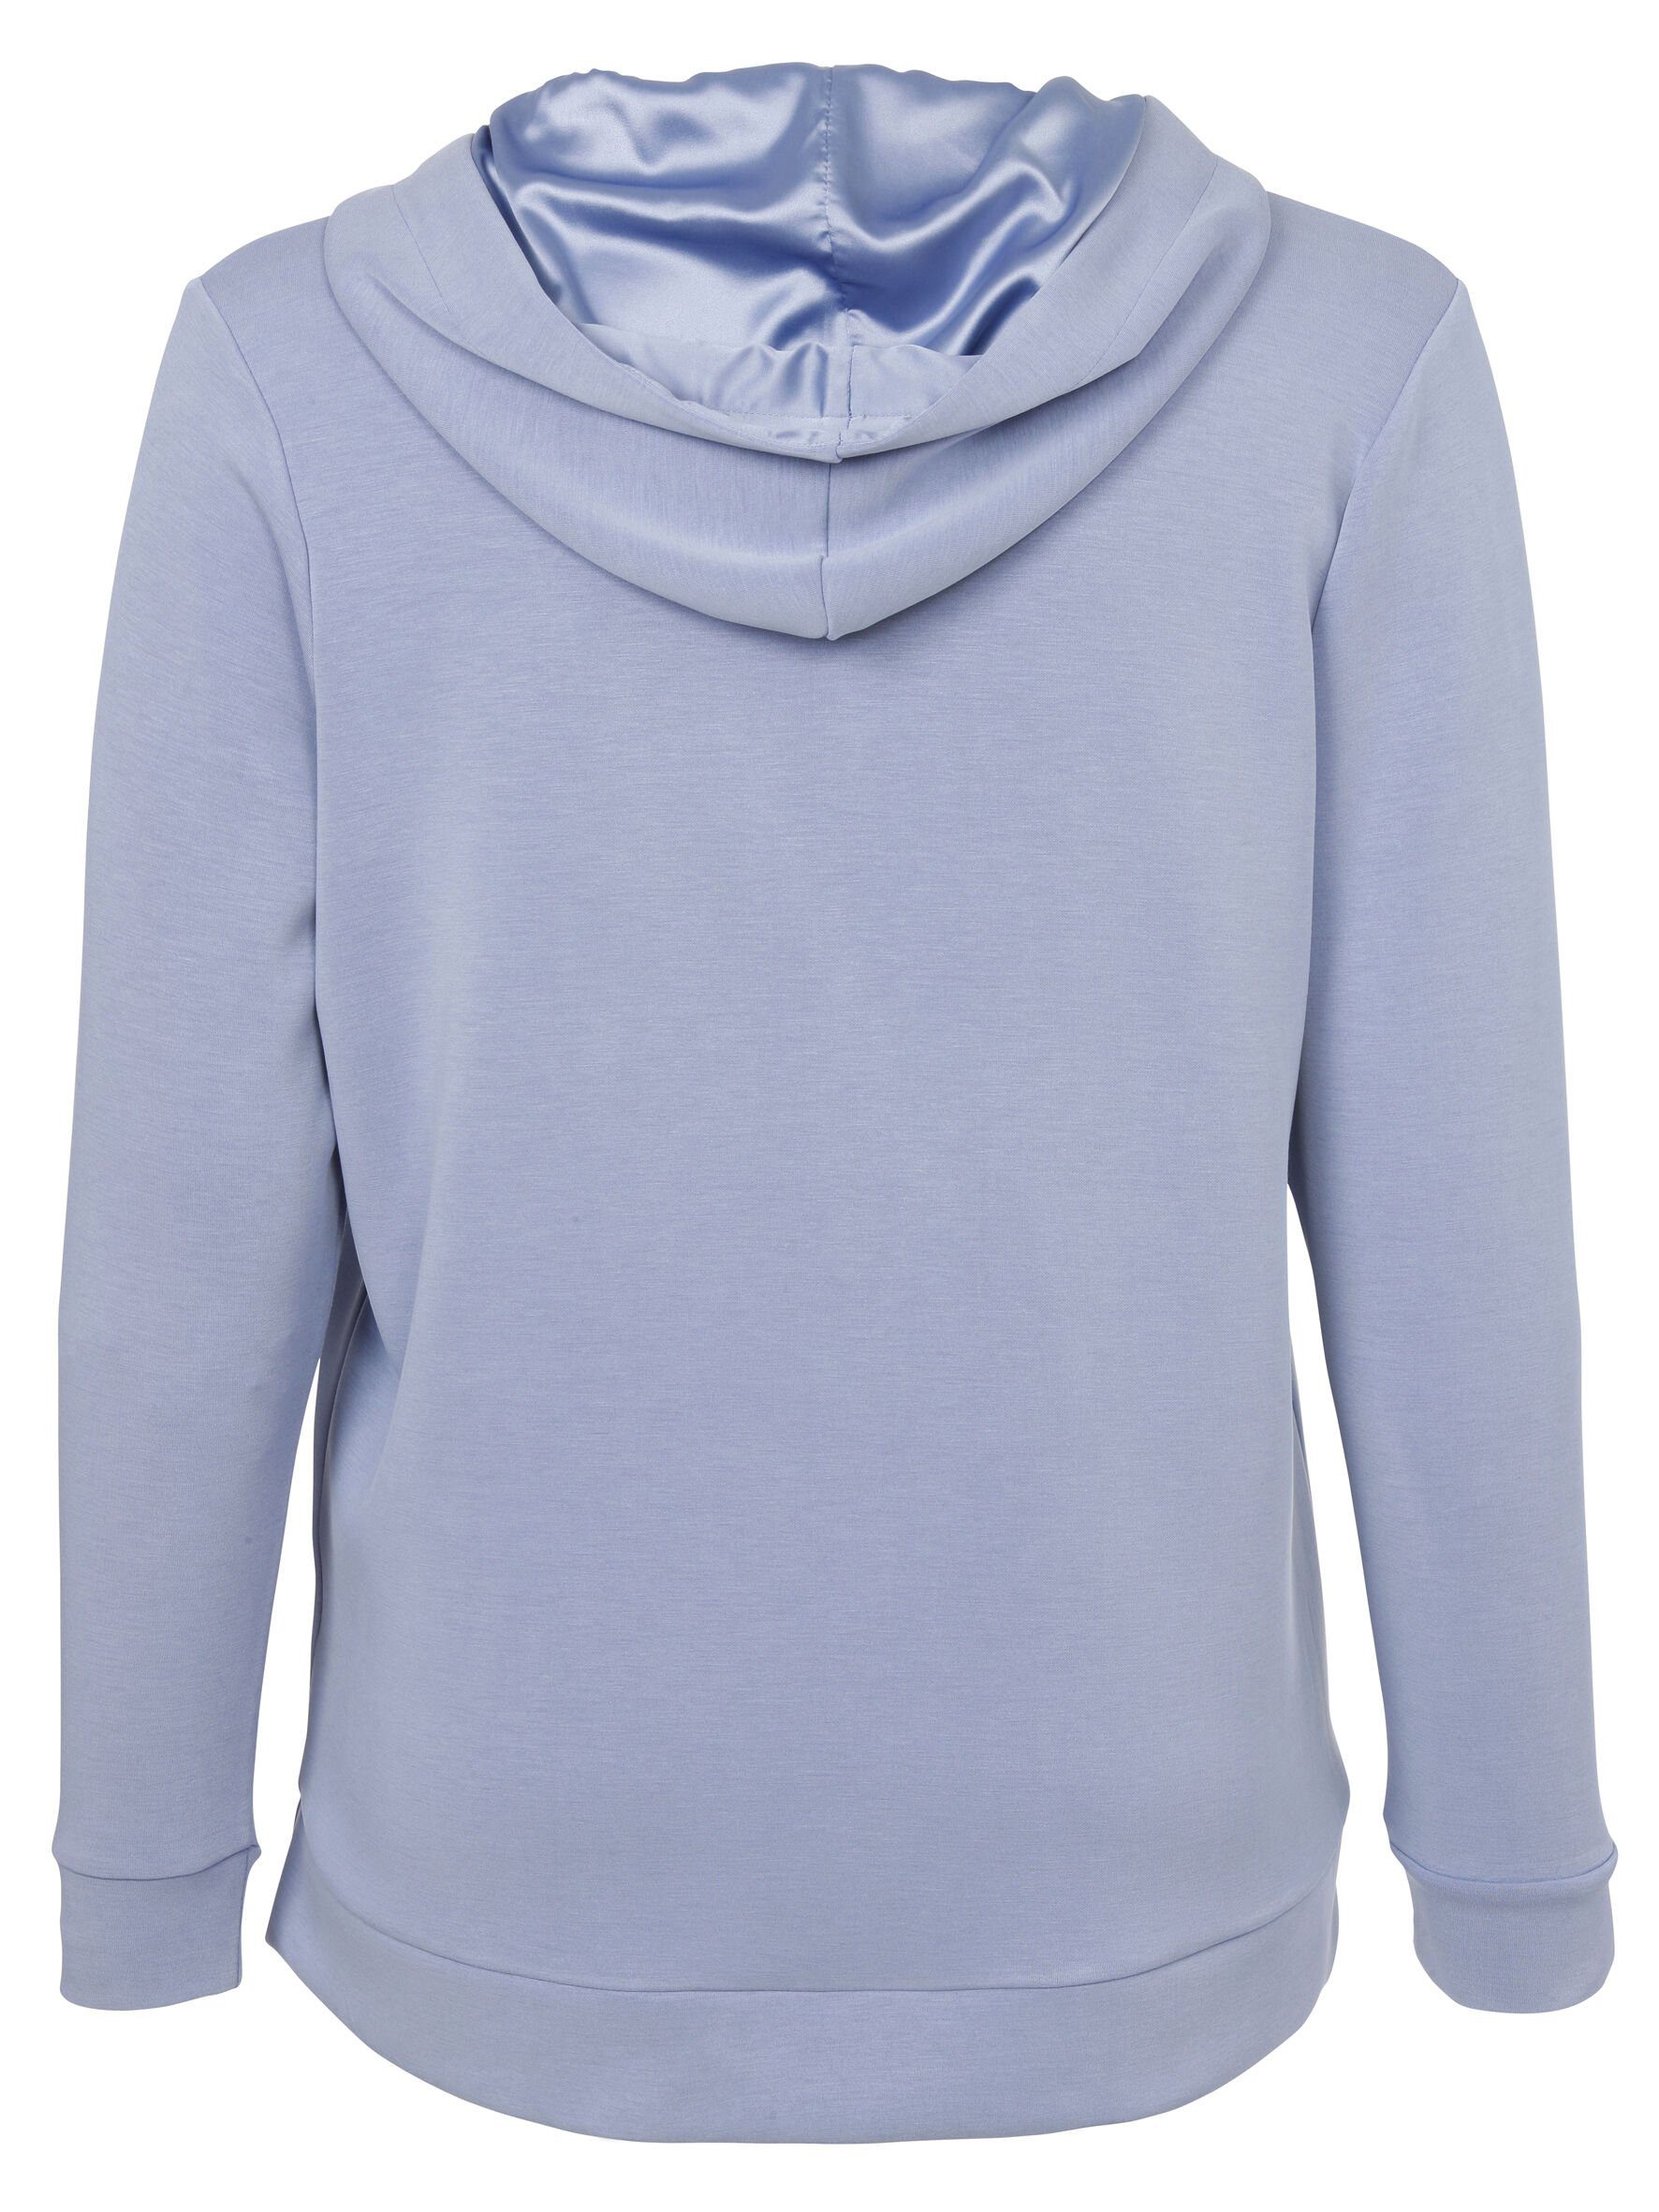 Sweatshirt Sportives DUE Stil mit unifarbenem VIA in rauchblau hochwertigen APPIA Viskosemischung Sweatshirt